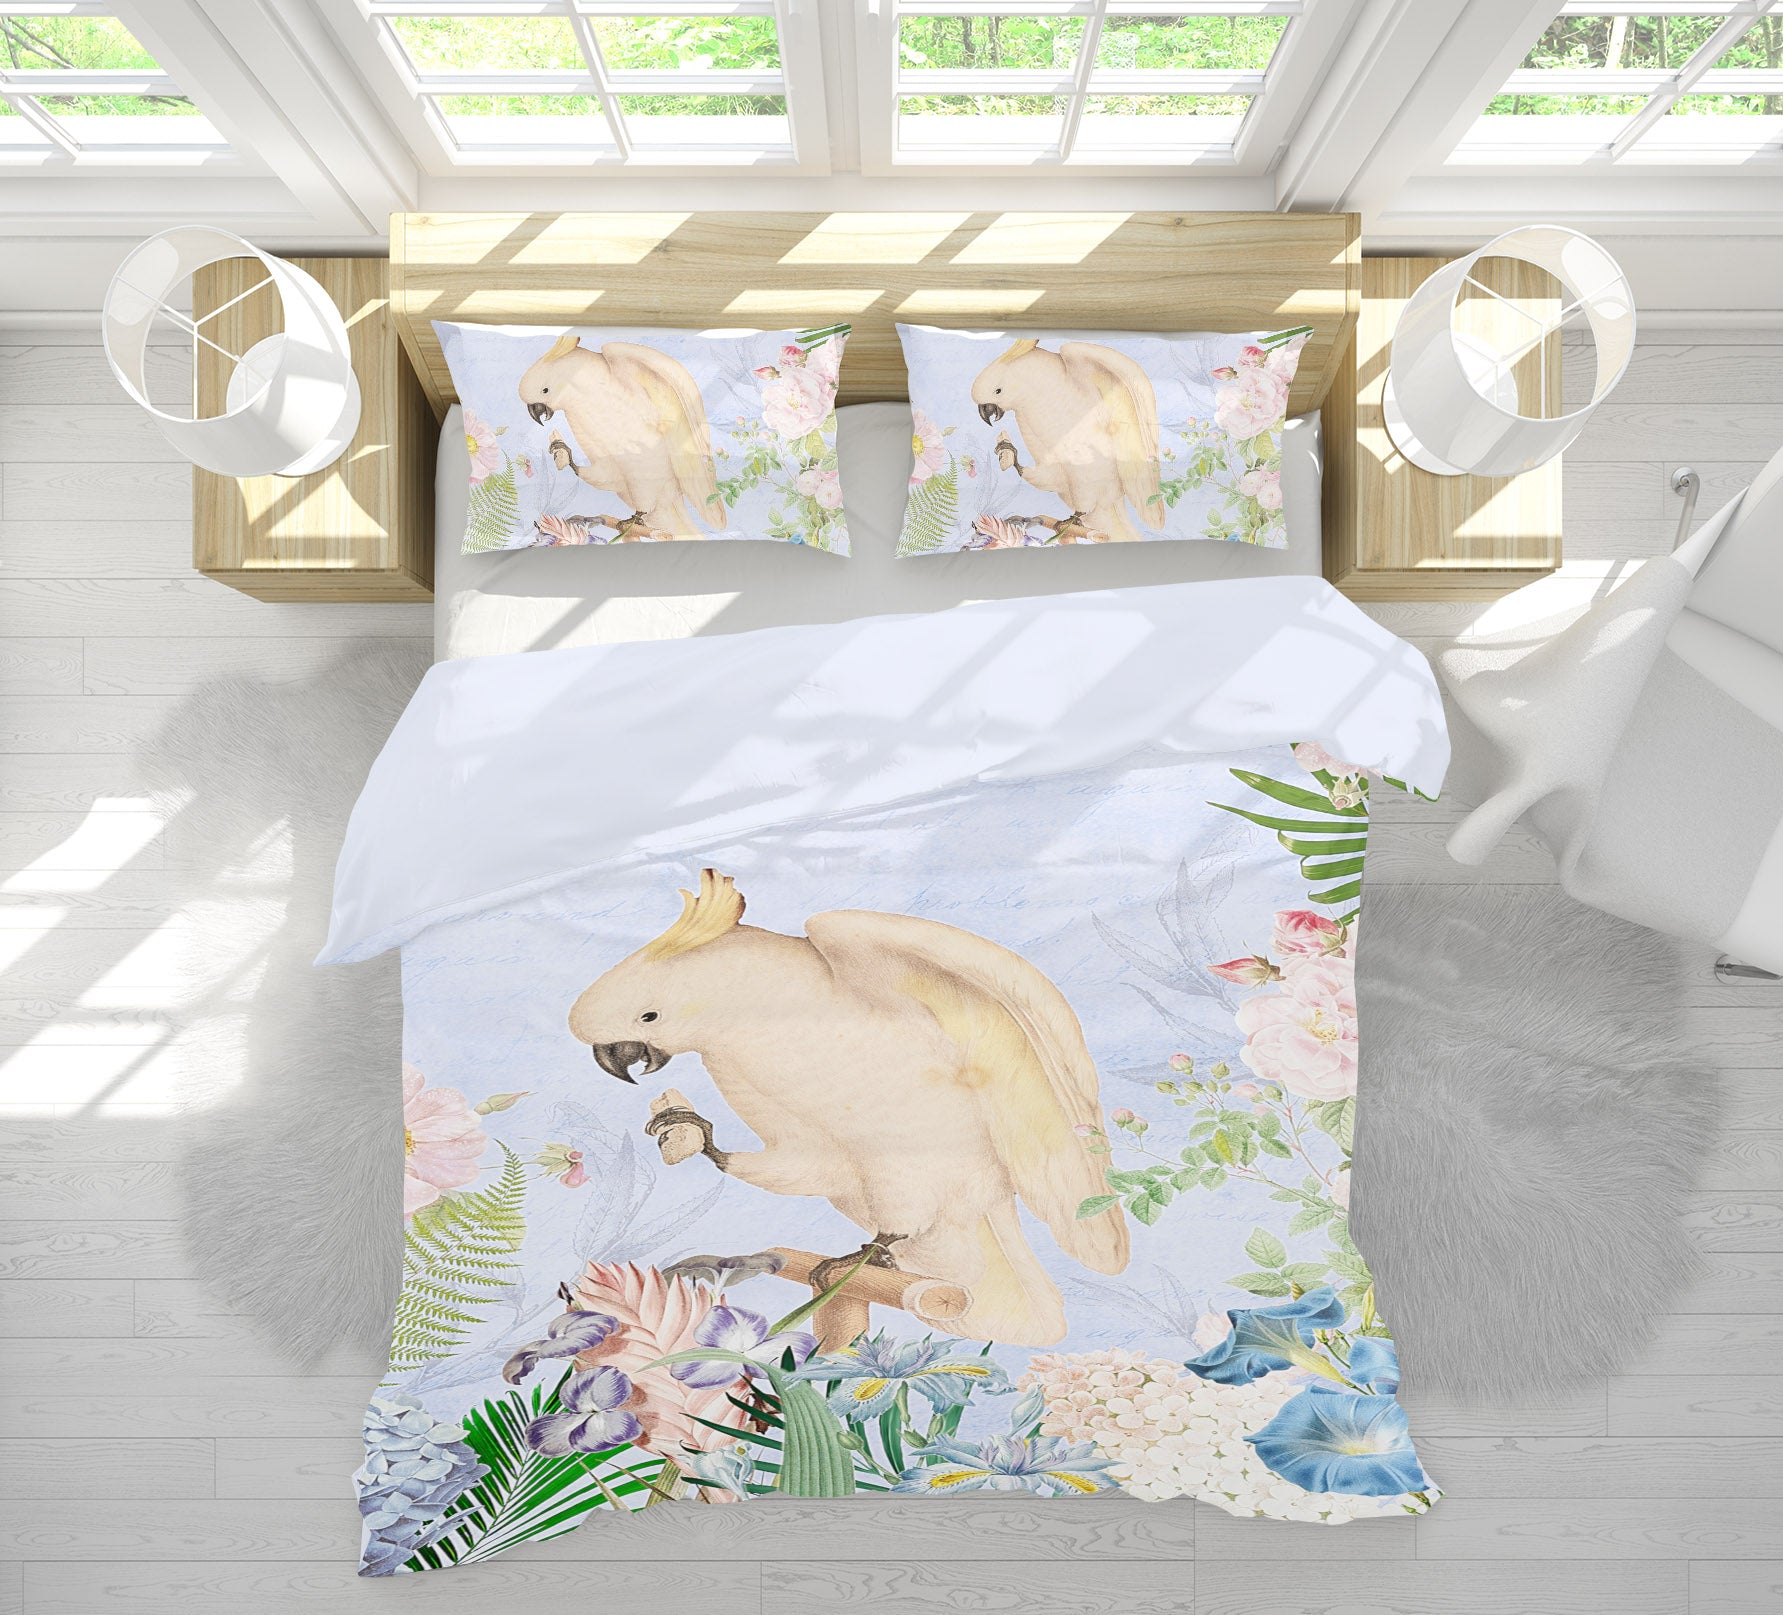 3D Flower Branch Parrot 18151 Uta Naumann Bedding Bed Pillowcases Quilt